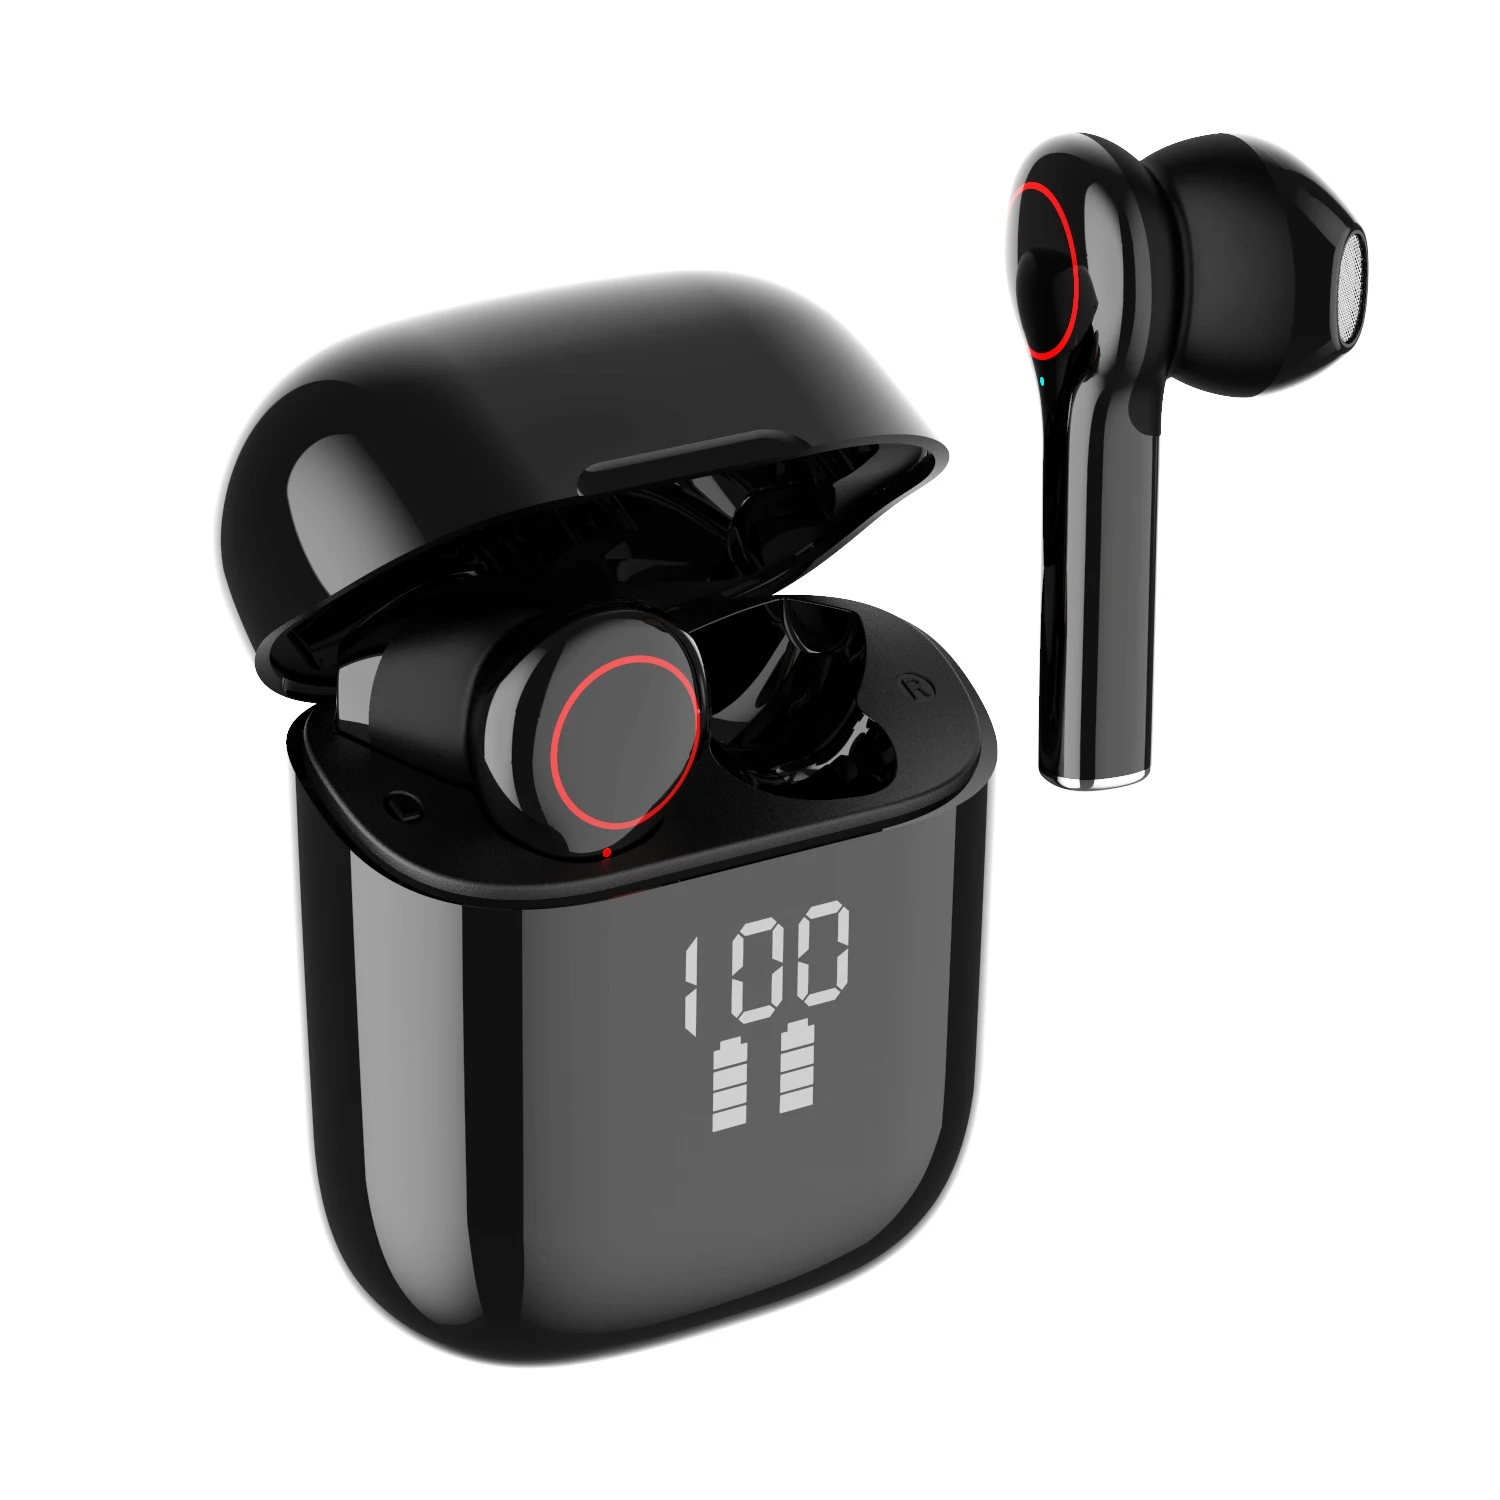 

TWS Earphone Bluetooth Wireless Headset Waterproof Deep Bass Earbuds True Wireless Stereo Headphone With Mic Sport Earphone, Black color